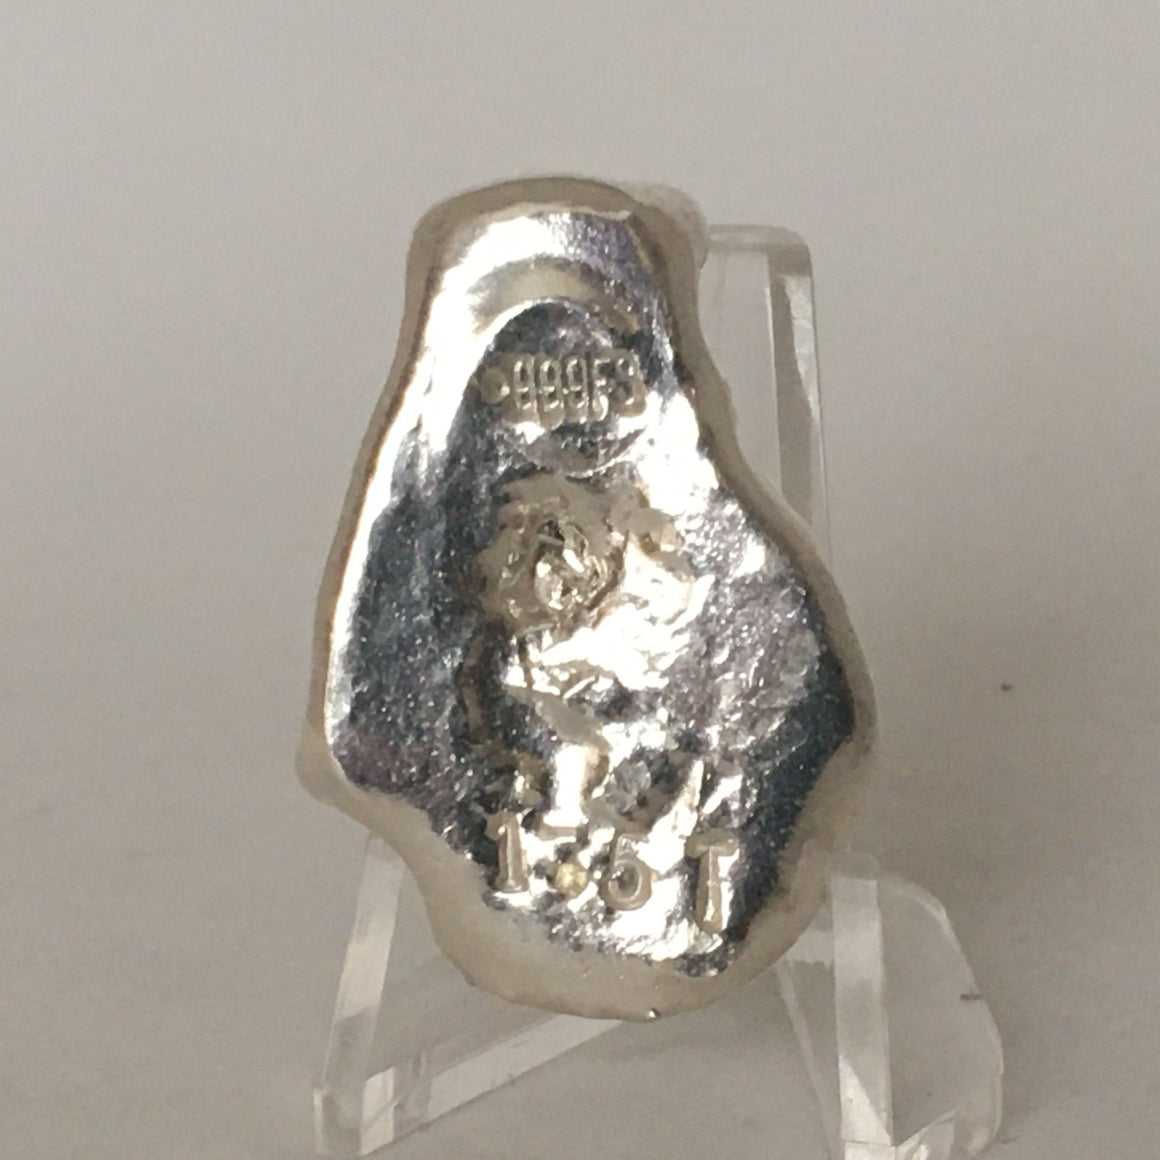 Space Bear by Tomoko's Enterprize, 1.5oz .999 Fine Silver Poured Art